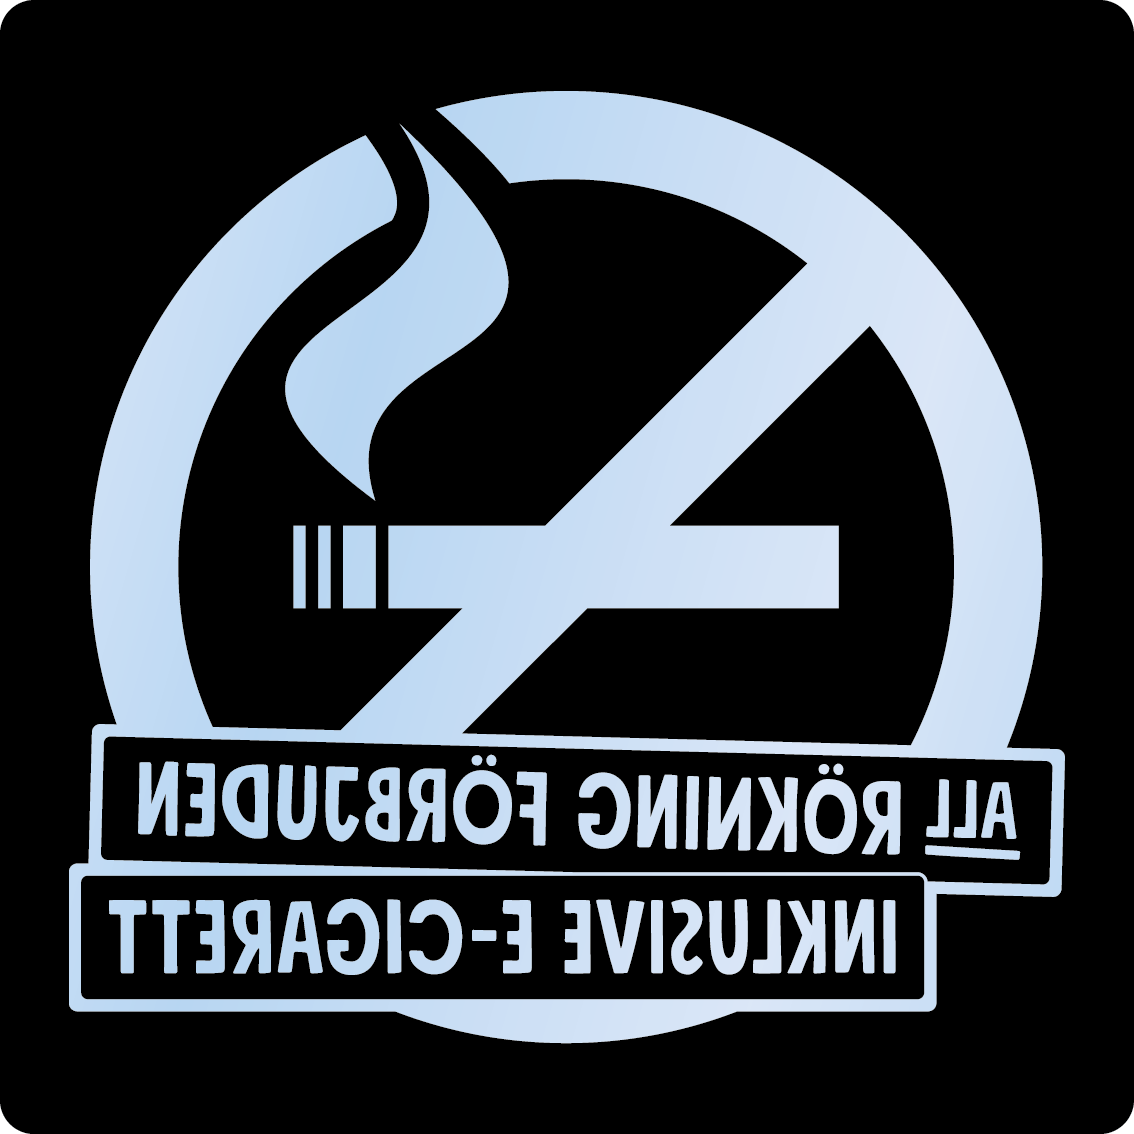 Bild rökförbudsskylt 02A16: Valfri PMS* / Transparent